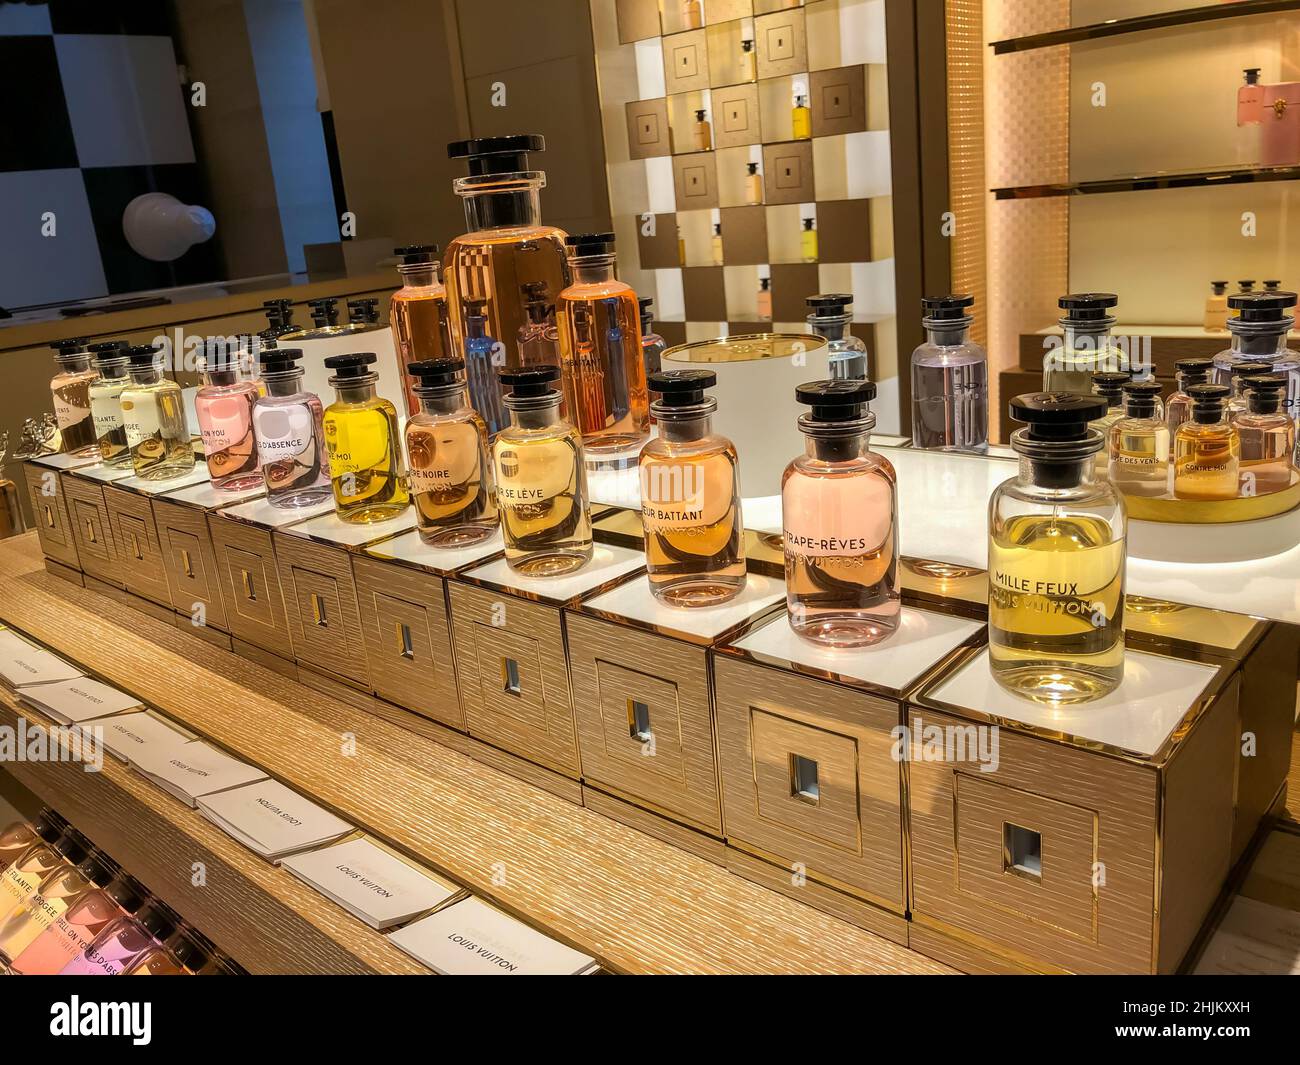 Inside Luxury Giant LVMH - Moët Hennessy Louis Vuitton 